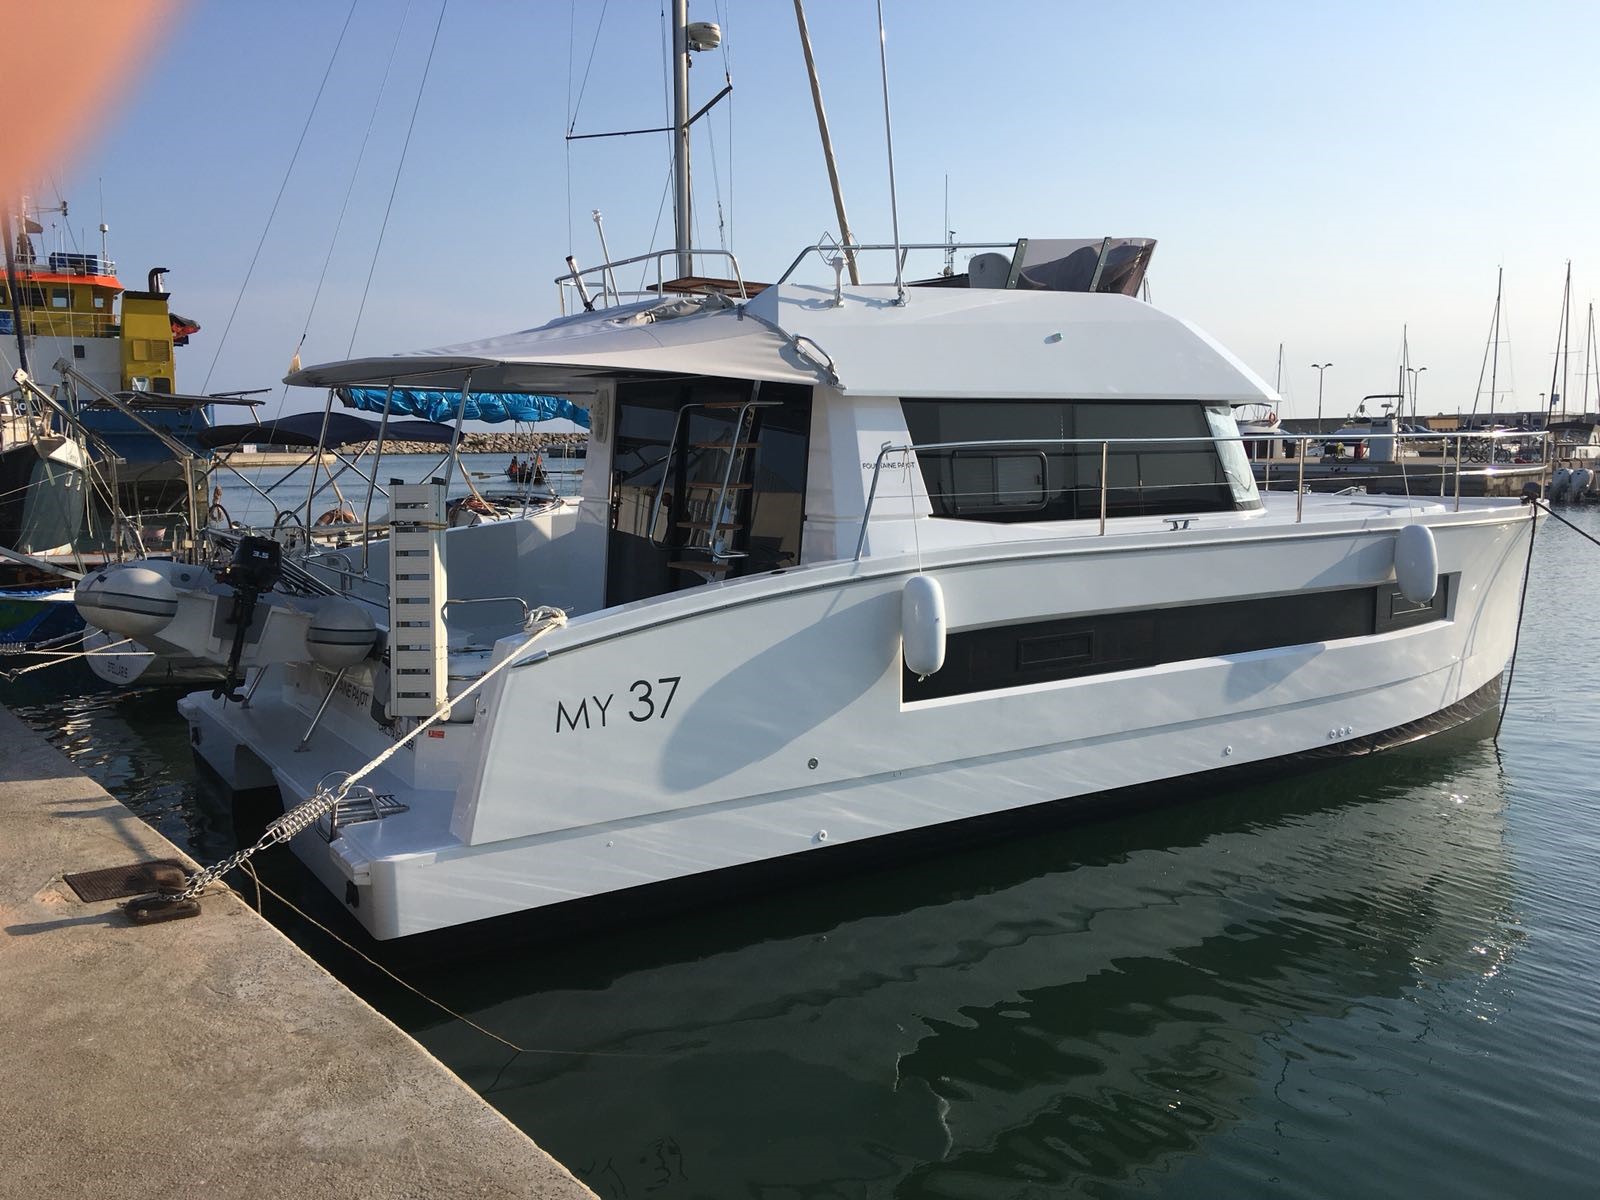 Barco de motor EN CHARTER, de la marca Fountaine Pajot Motor Yachts modelo MY 37 y del año 2017, disponible en Puerto Deportivo El Masnou El Masnou Barcelona España